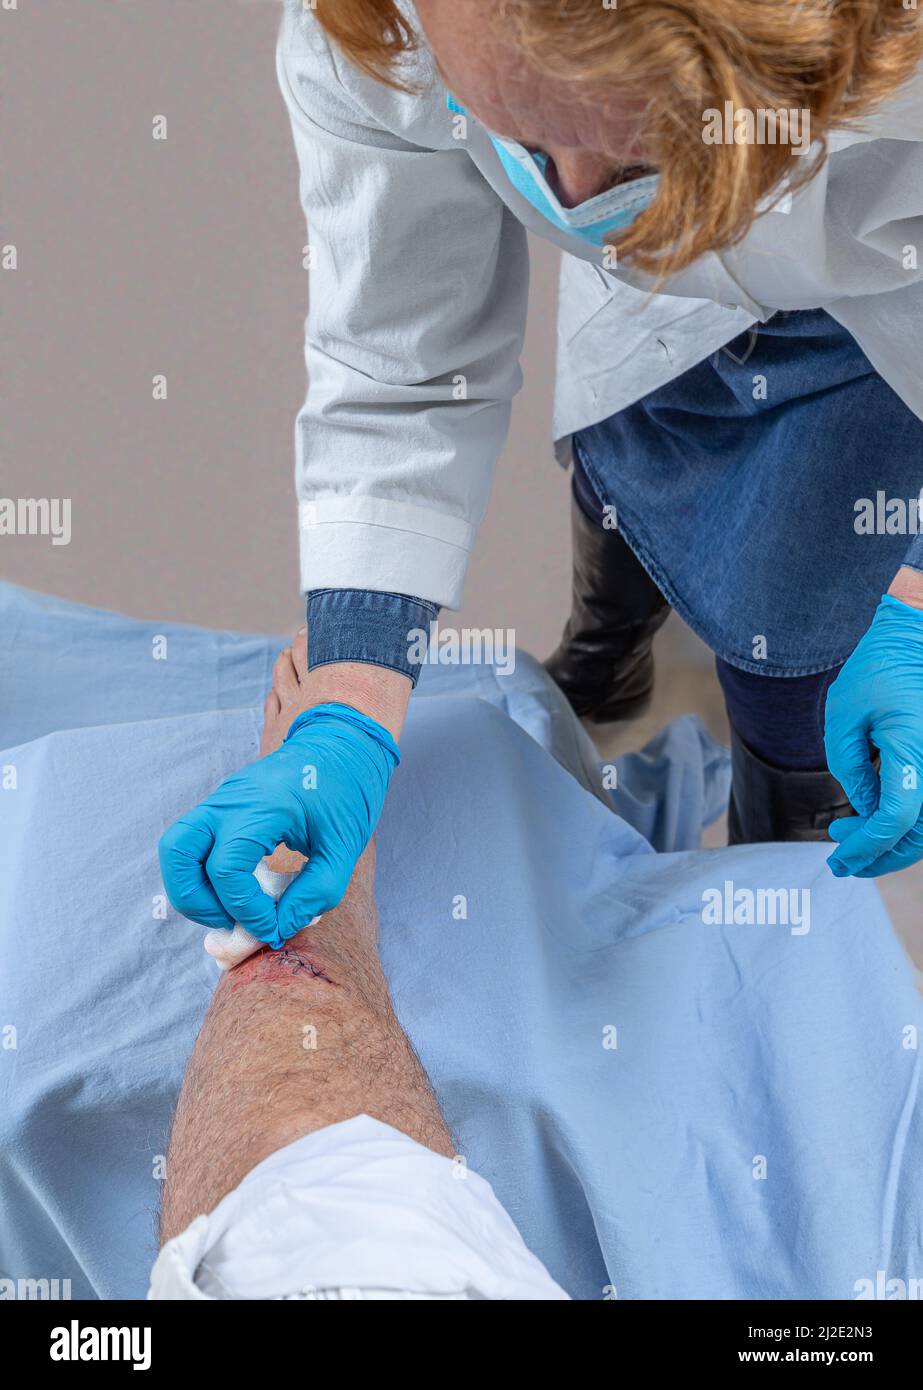 Krankenschwester Pflege frisch blutige Verletzung Wunde auf dem Tibiabaum des Beins. Klebende Stiche, um den Schnitt zu halten. Stockfoto